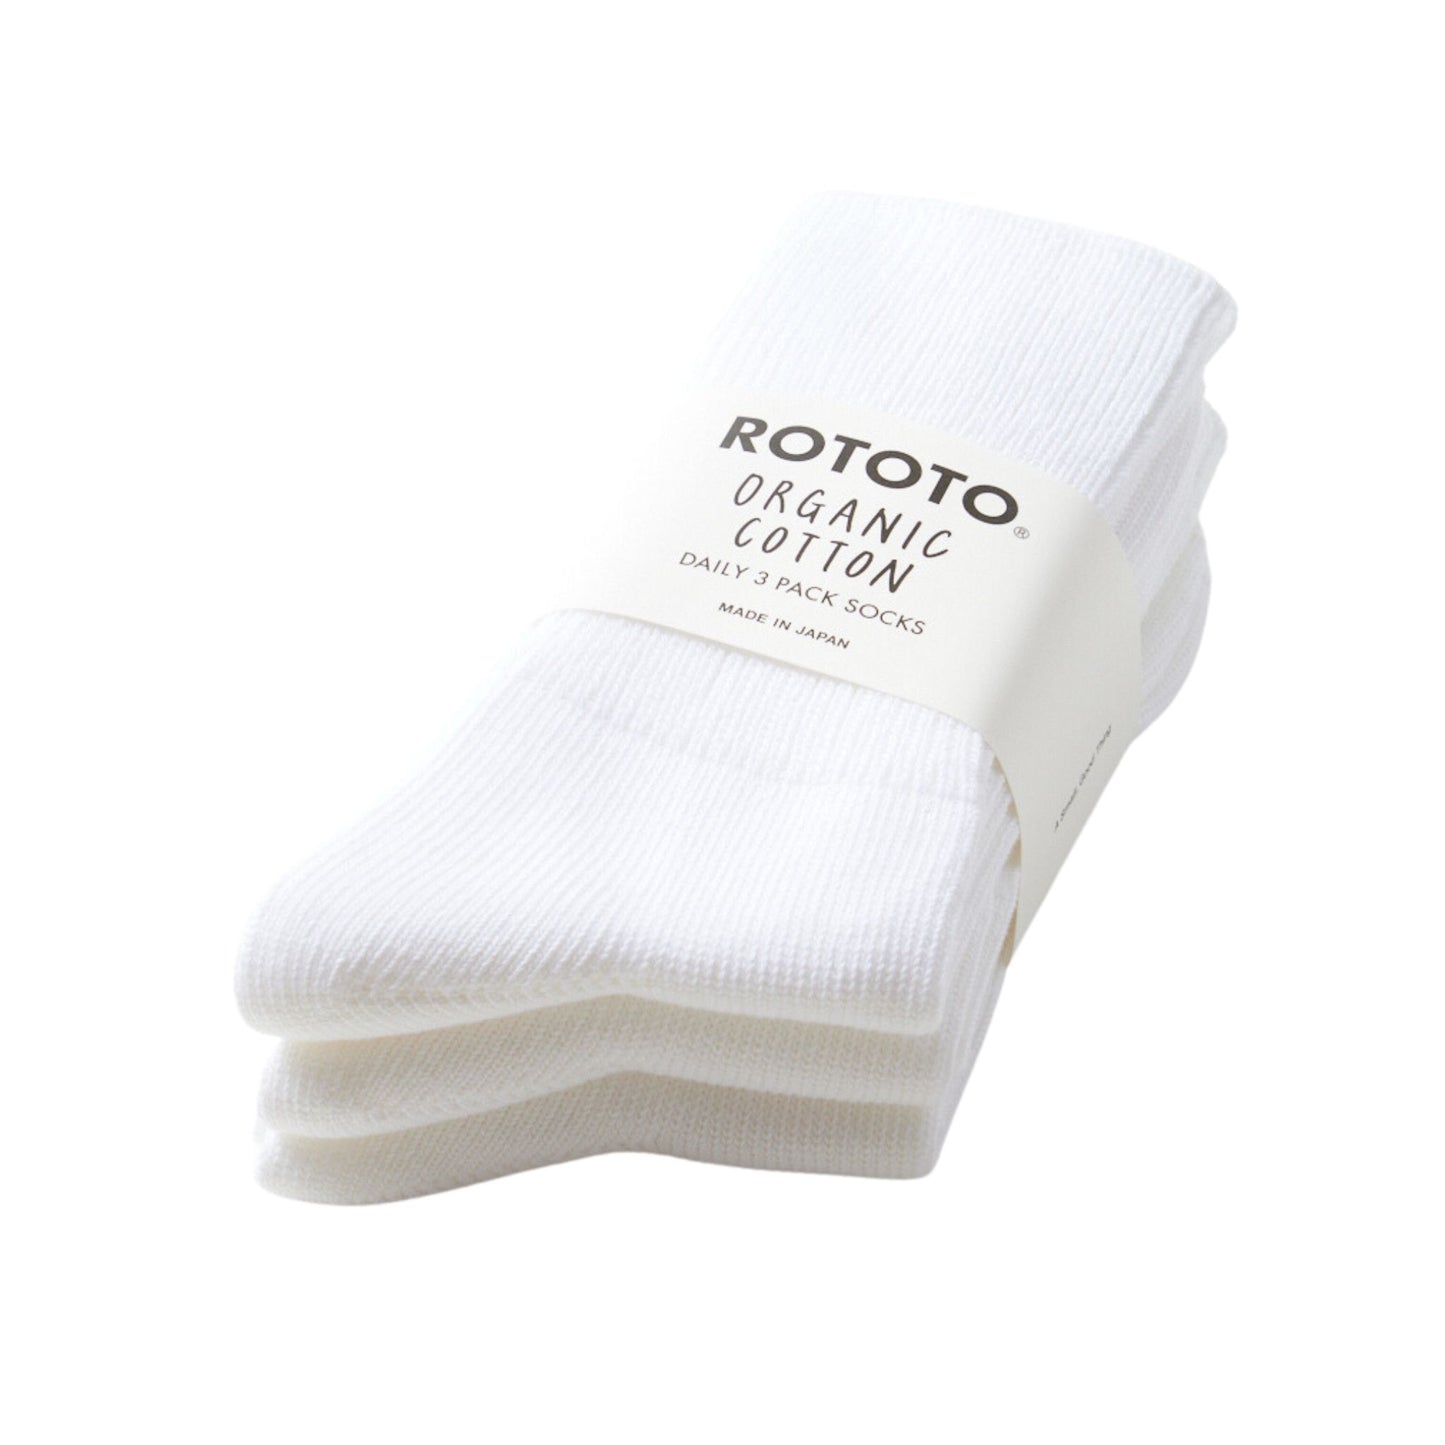 ROTOTO - Organic Daily 3 Pack Crew Socks White